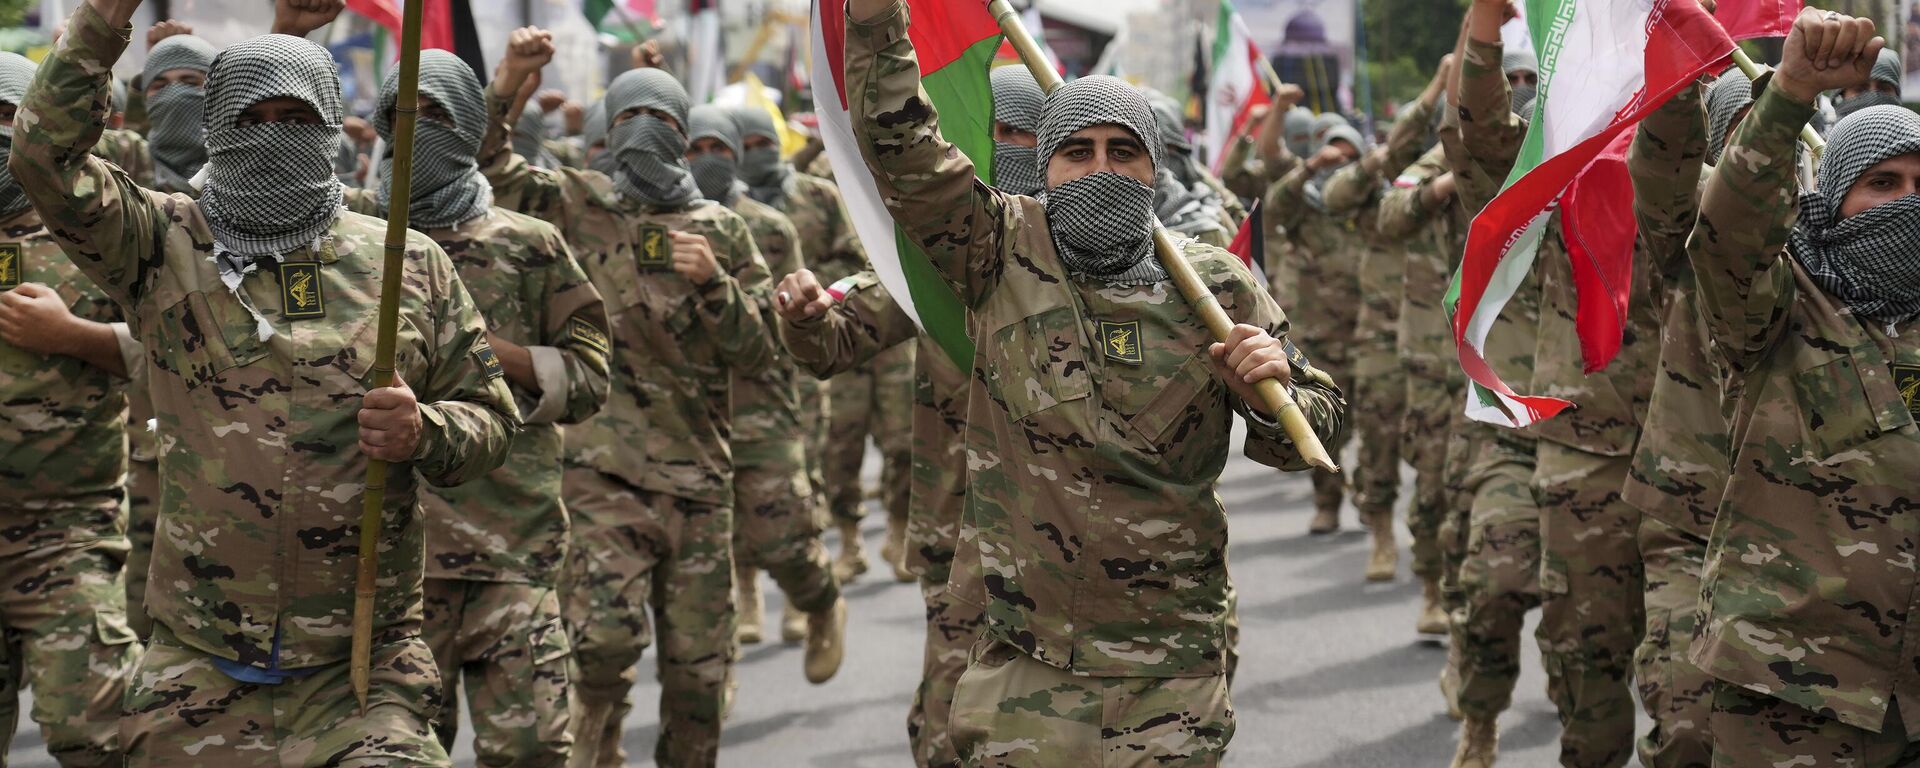 Membros da força paramilitar Basij marcham durante o comício anual pró-palestino Al-Quds, ou Jerusalém, enquanto cobrem seus rostos no estilo de militantes palestinos e libaneses em Teerã, Irã, 29 de abril de 2022 - Sputnik Brasil, 1920, 07.01.2023